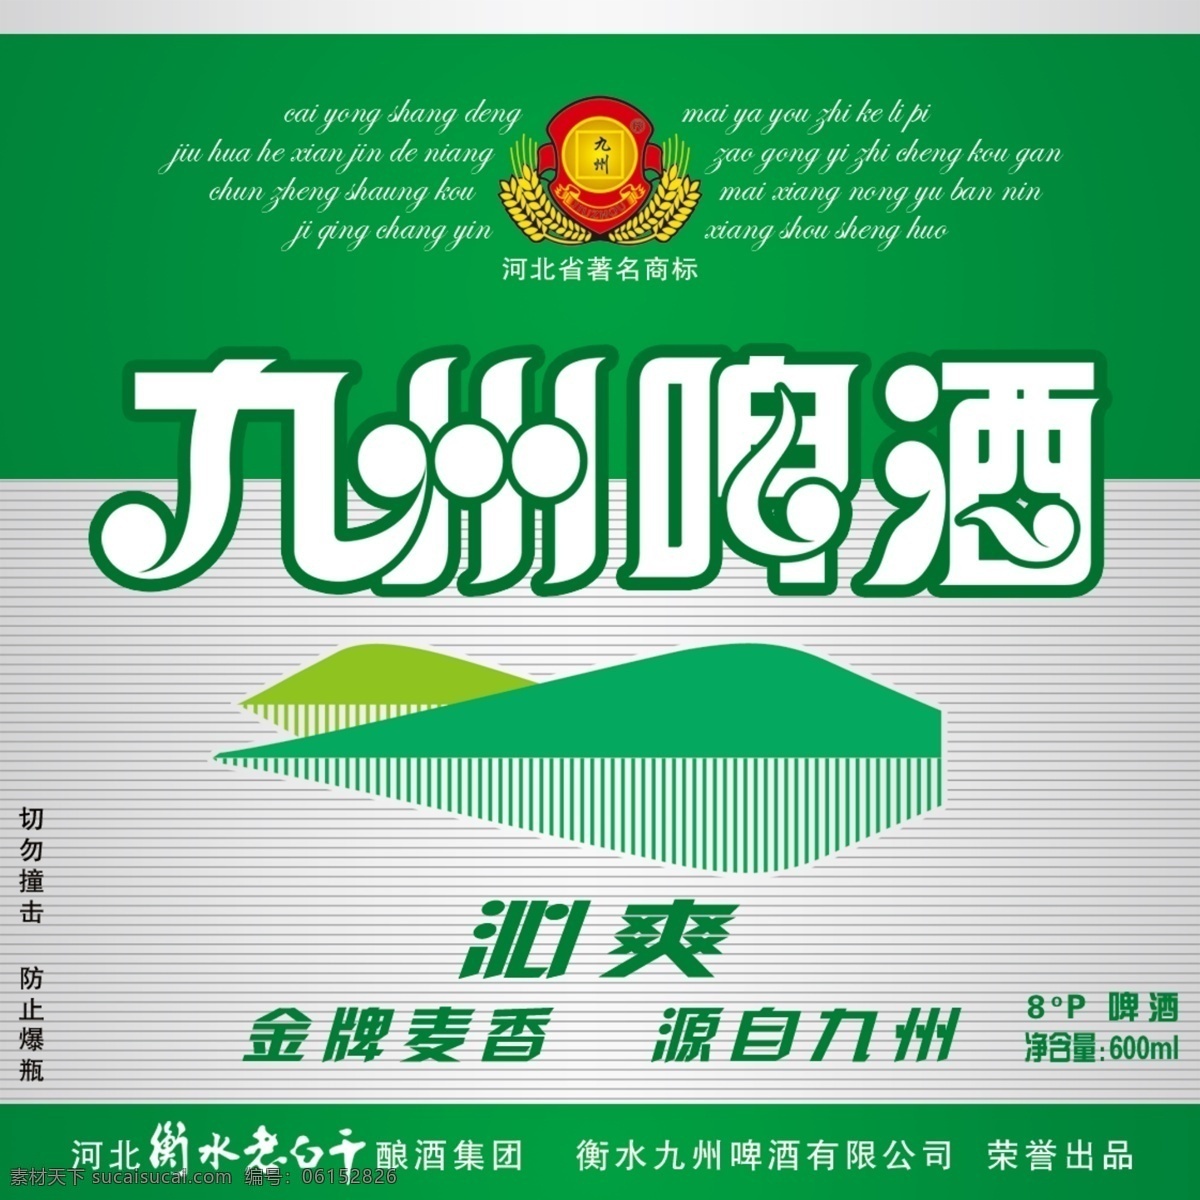 九州沁爽 啤酒 商标 瓶标 分层 啤酒商标 包装设计 广告设计模板 源文件